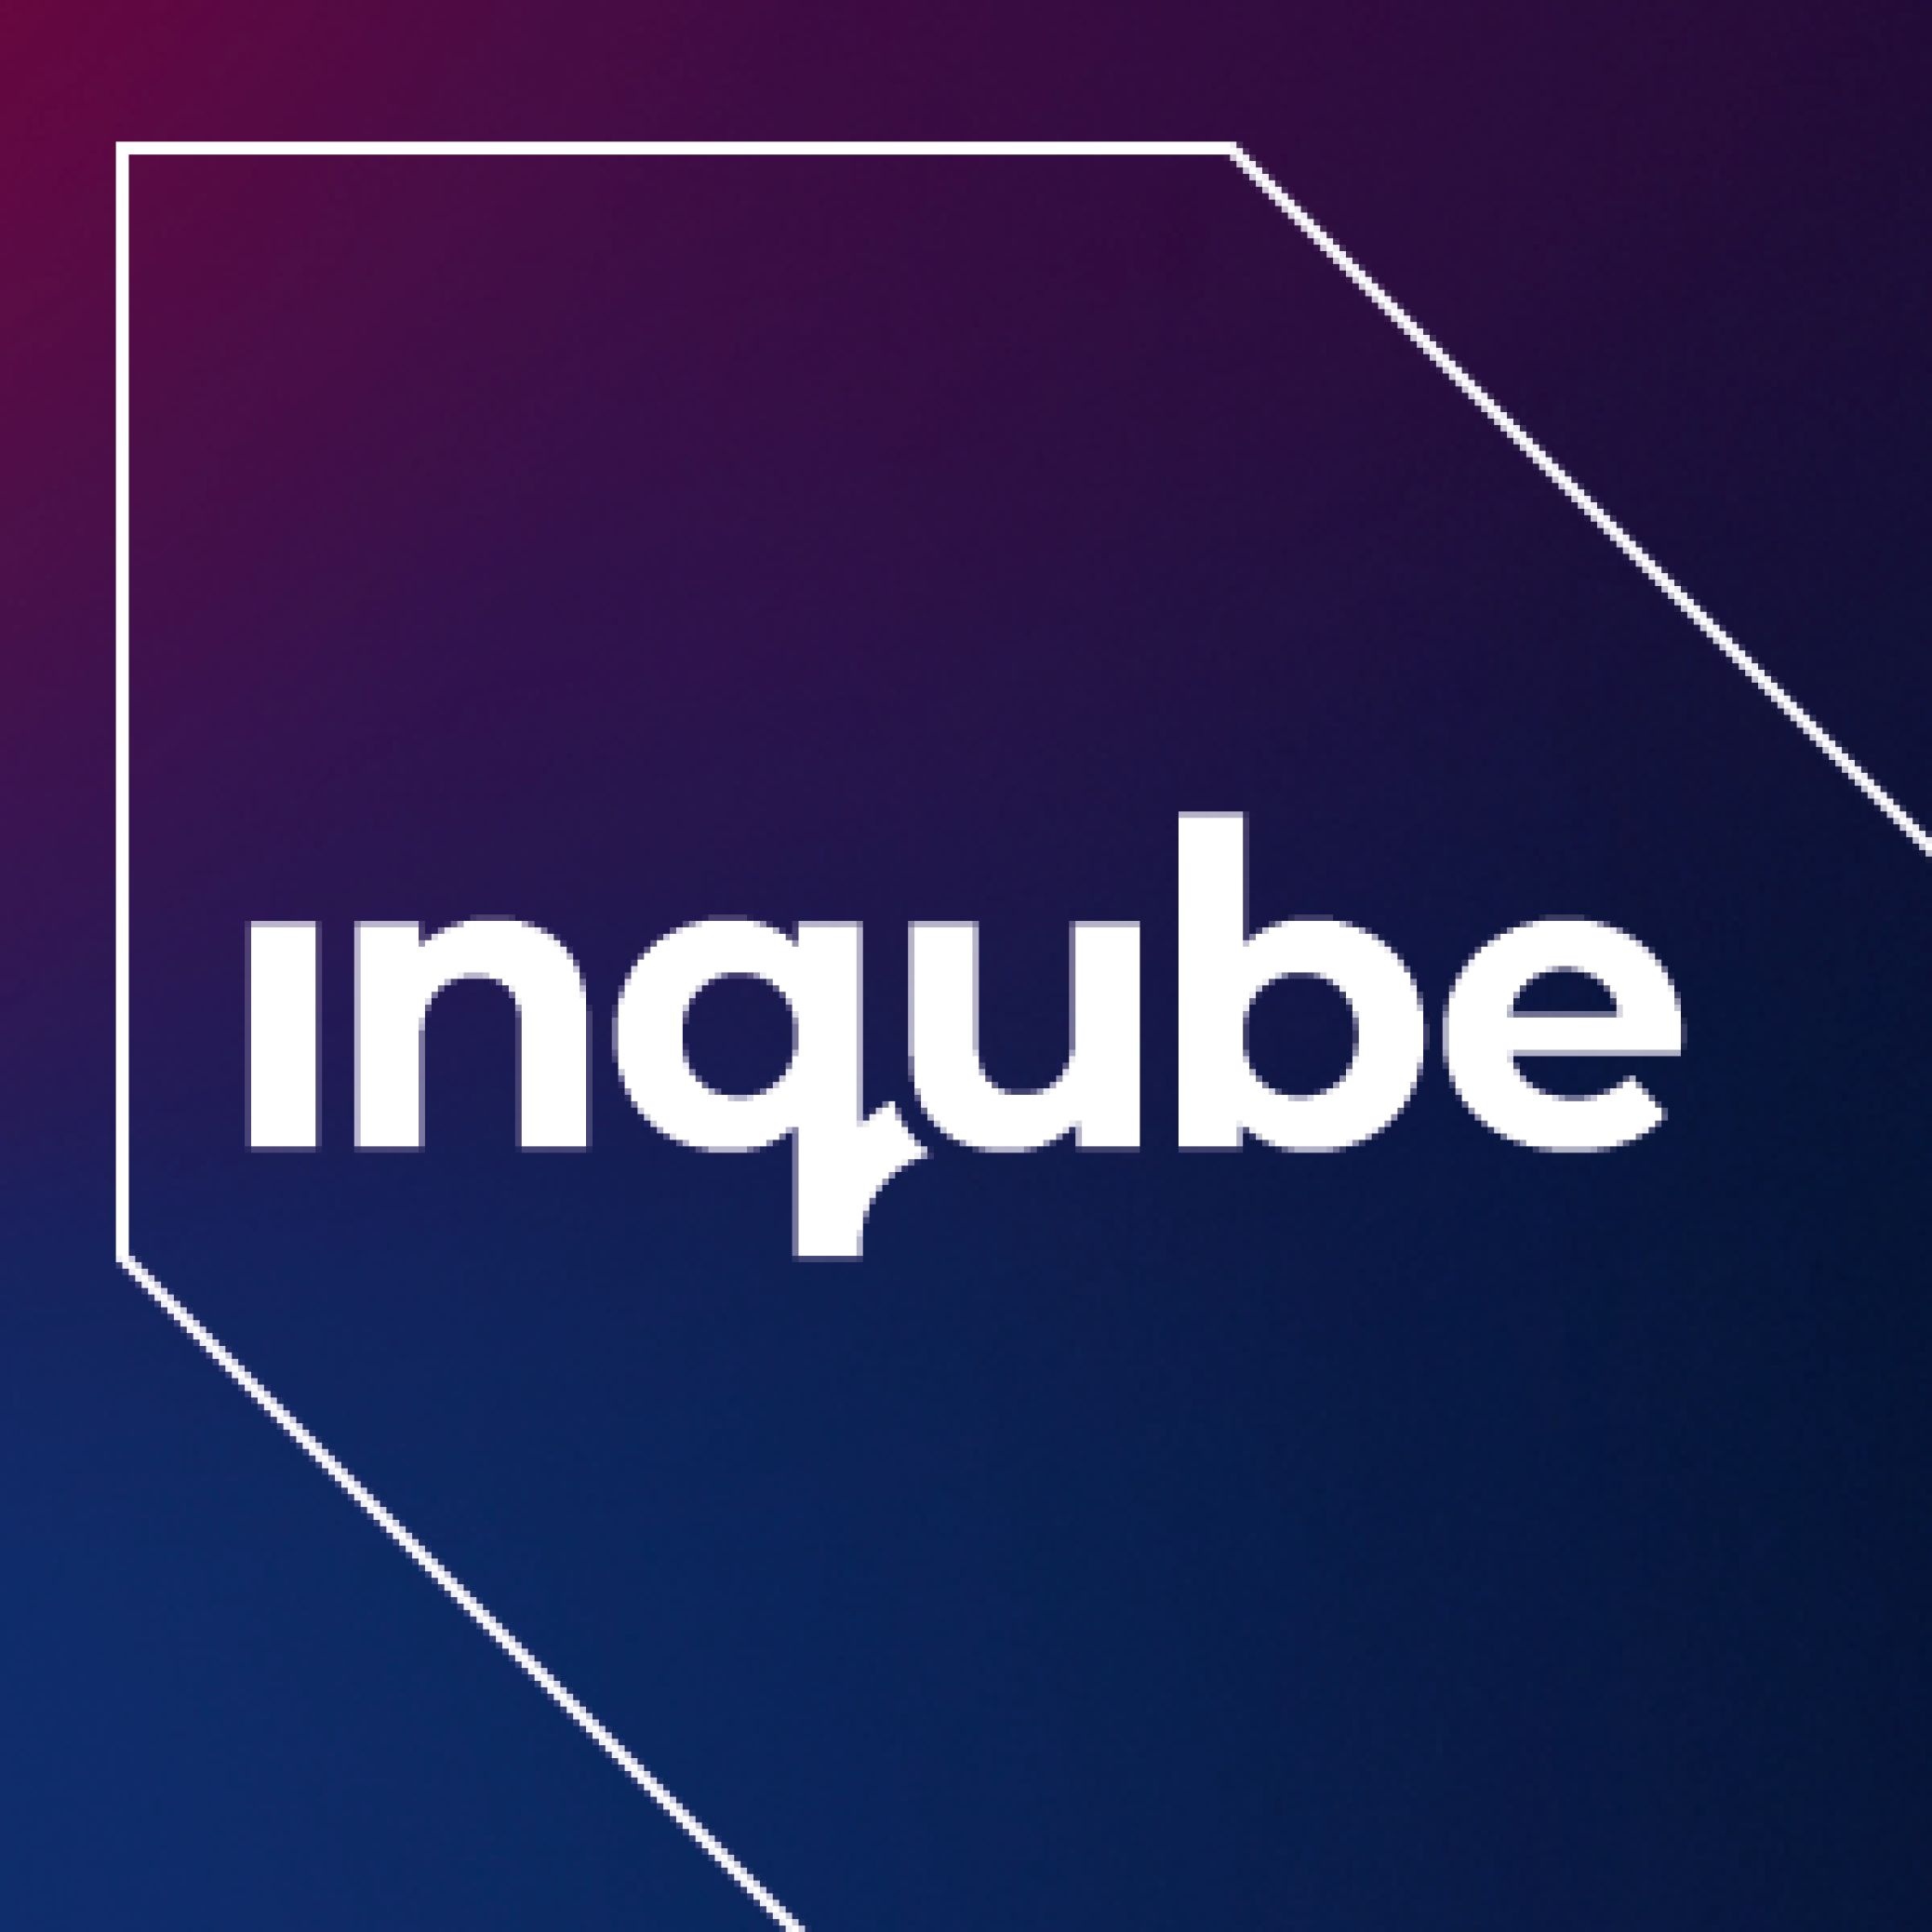 Logo Inqube